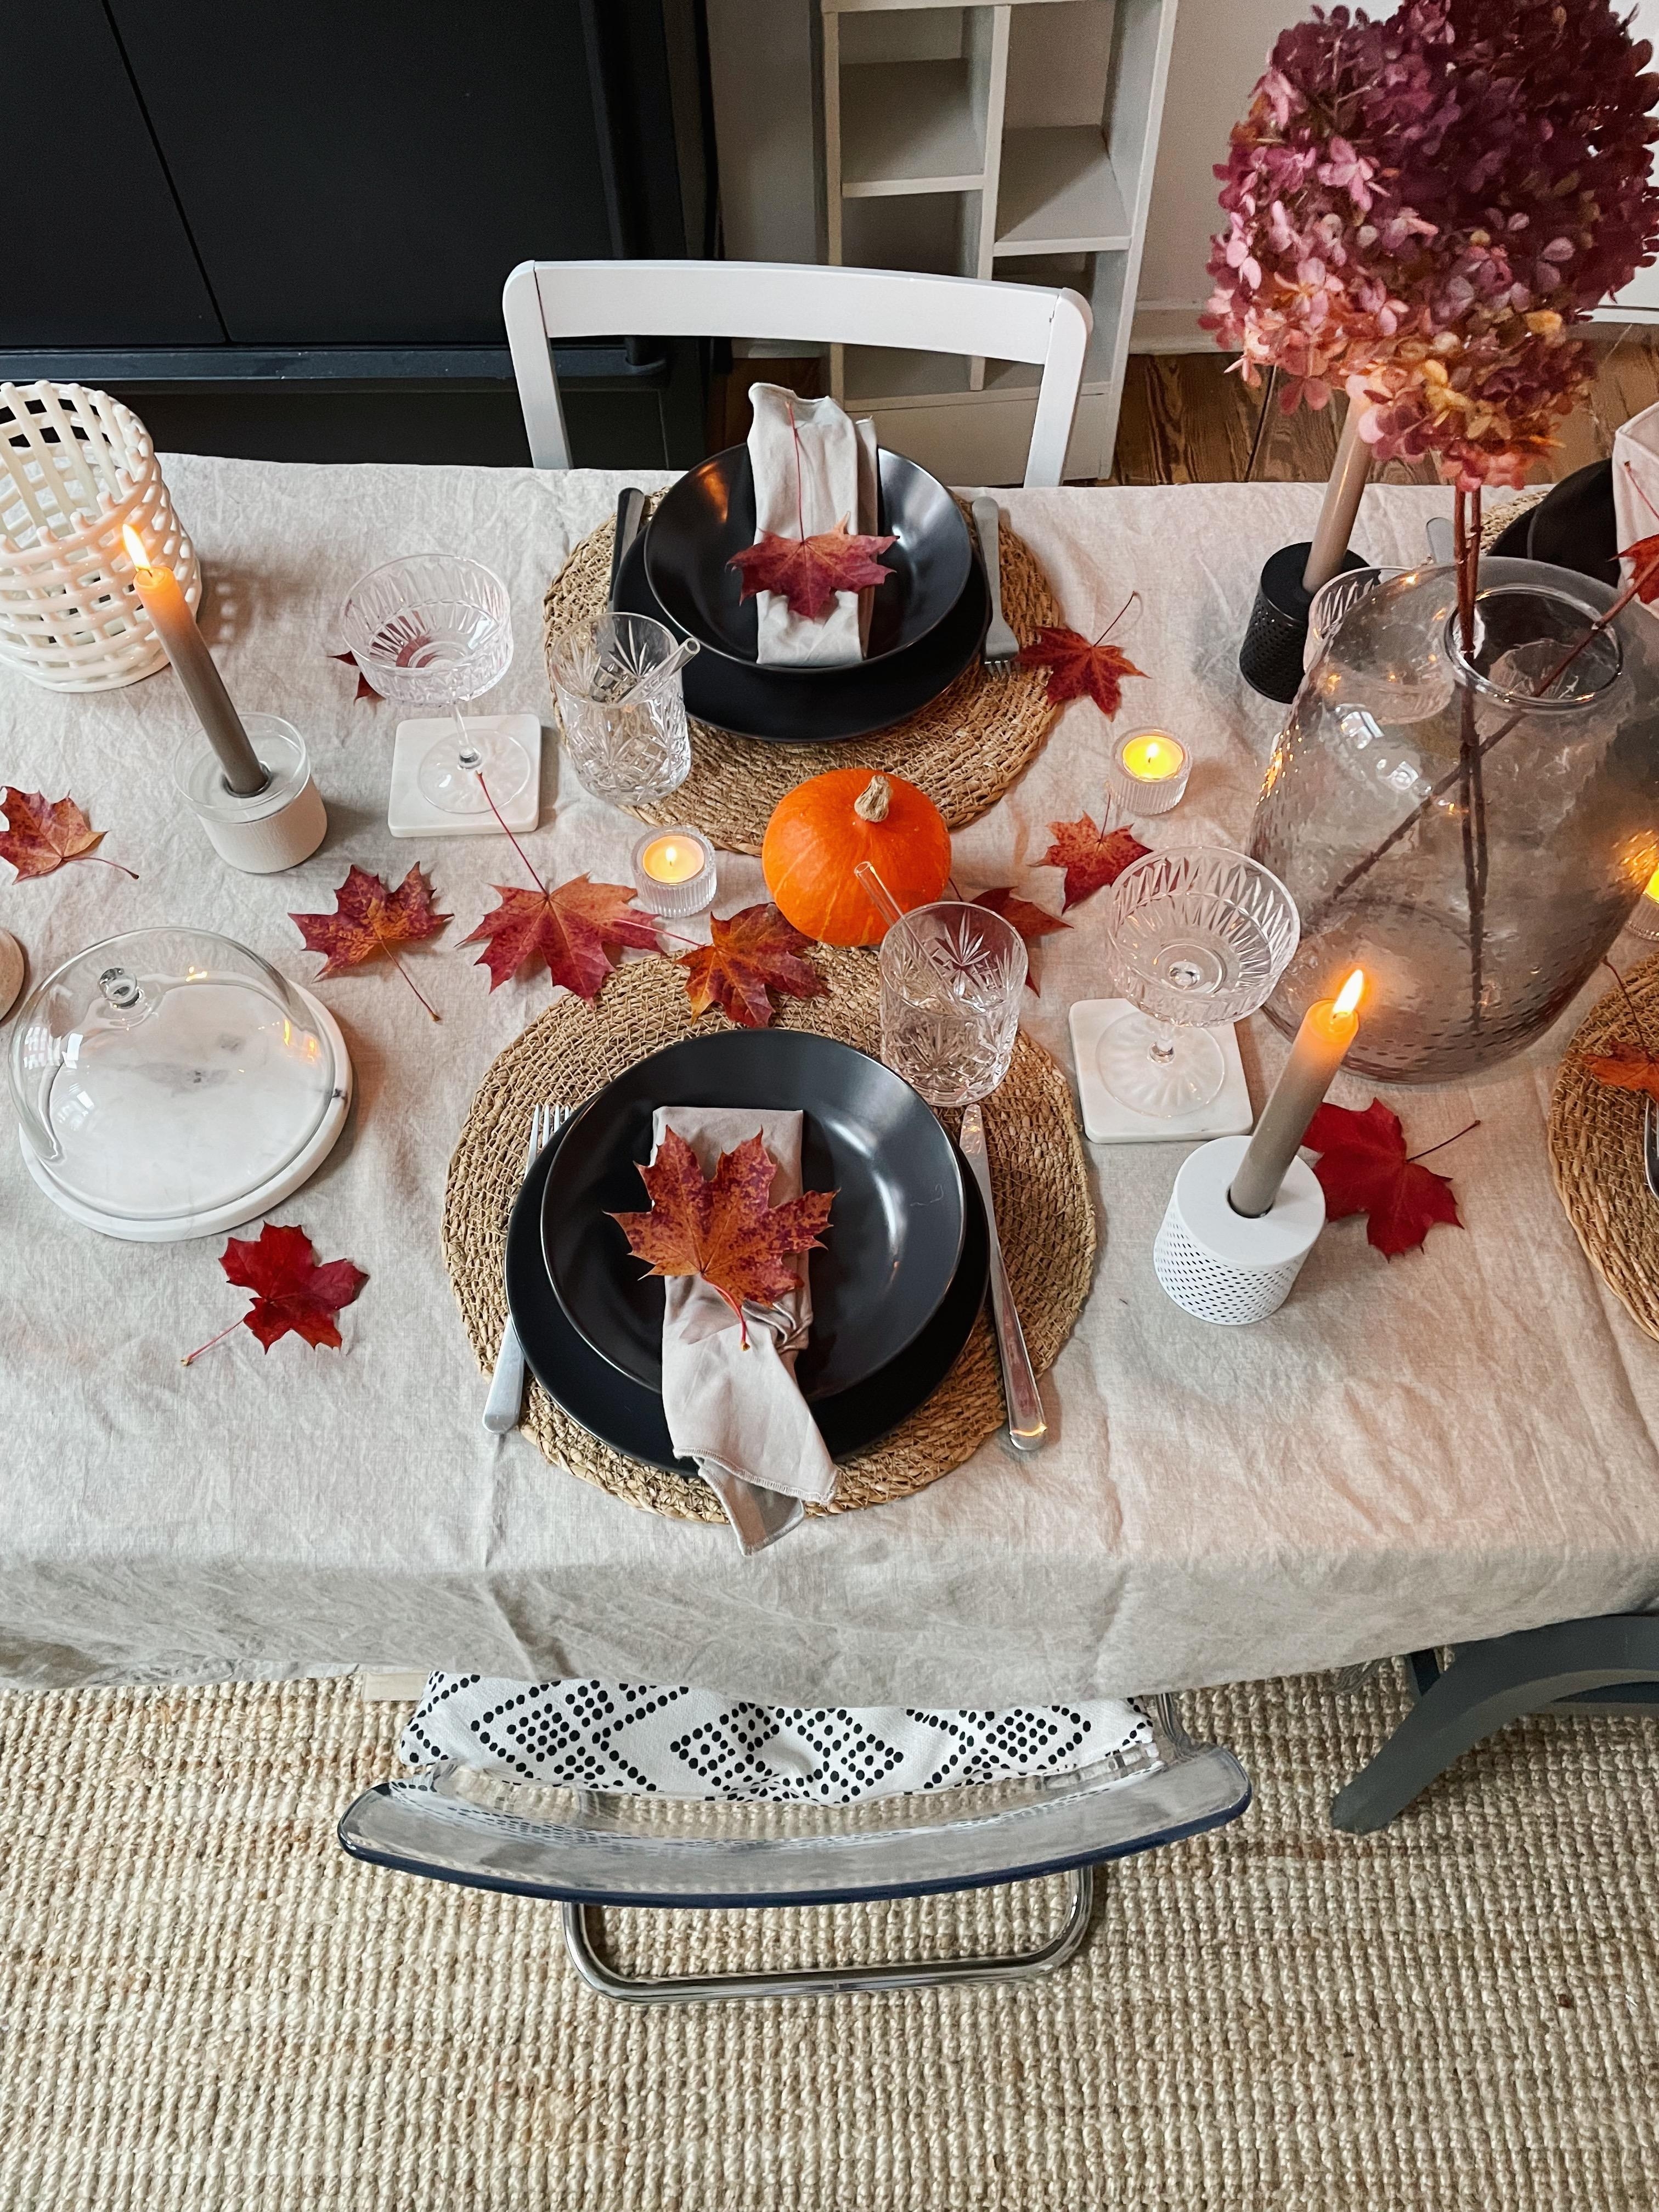 Herbsttisch 🍁✨ #tabledecor#gedecktertisch#herbsttisch#autumndecor